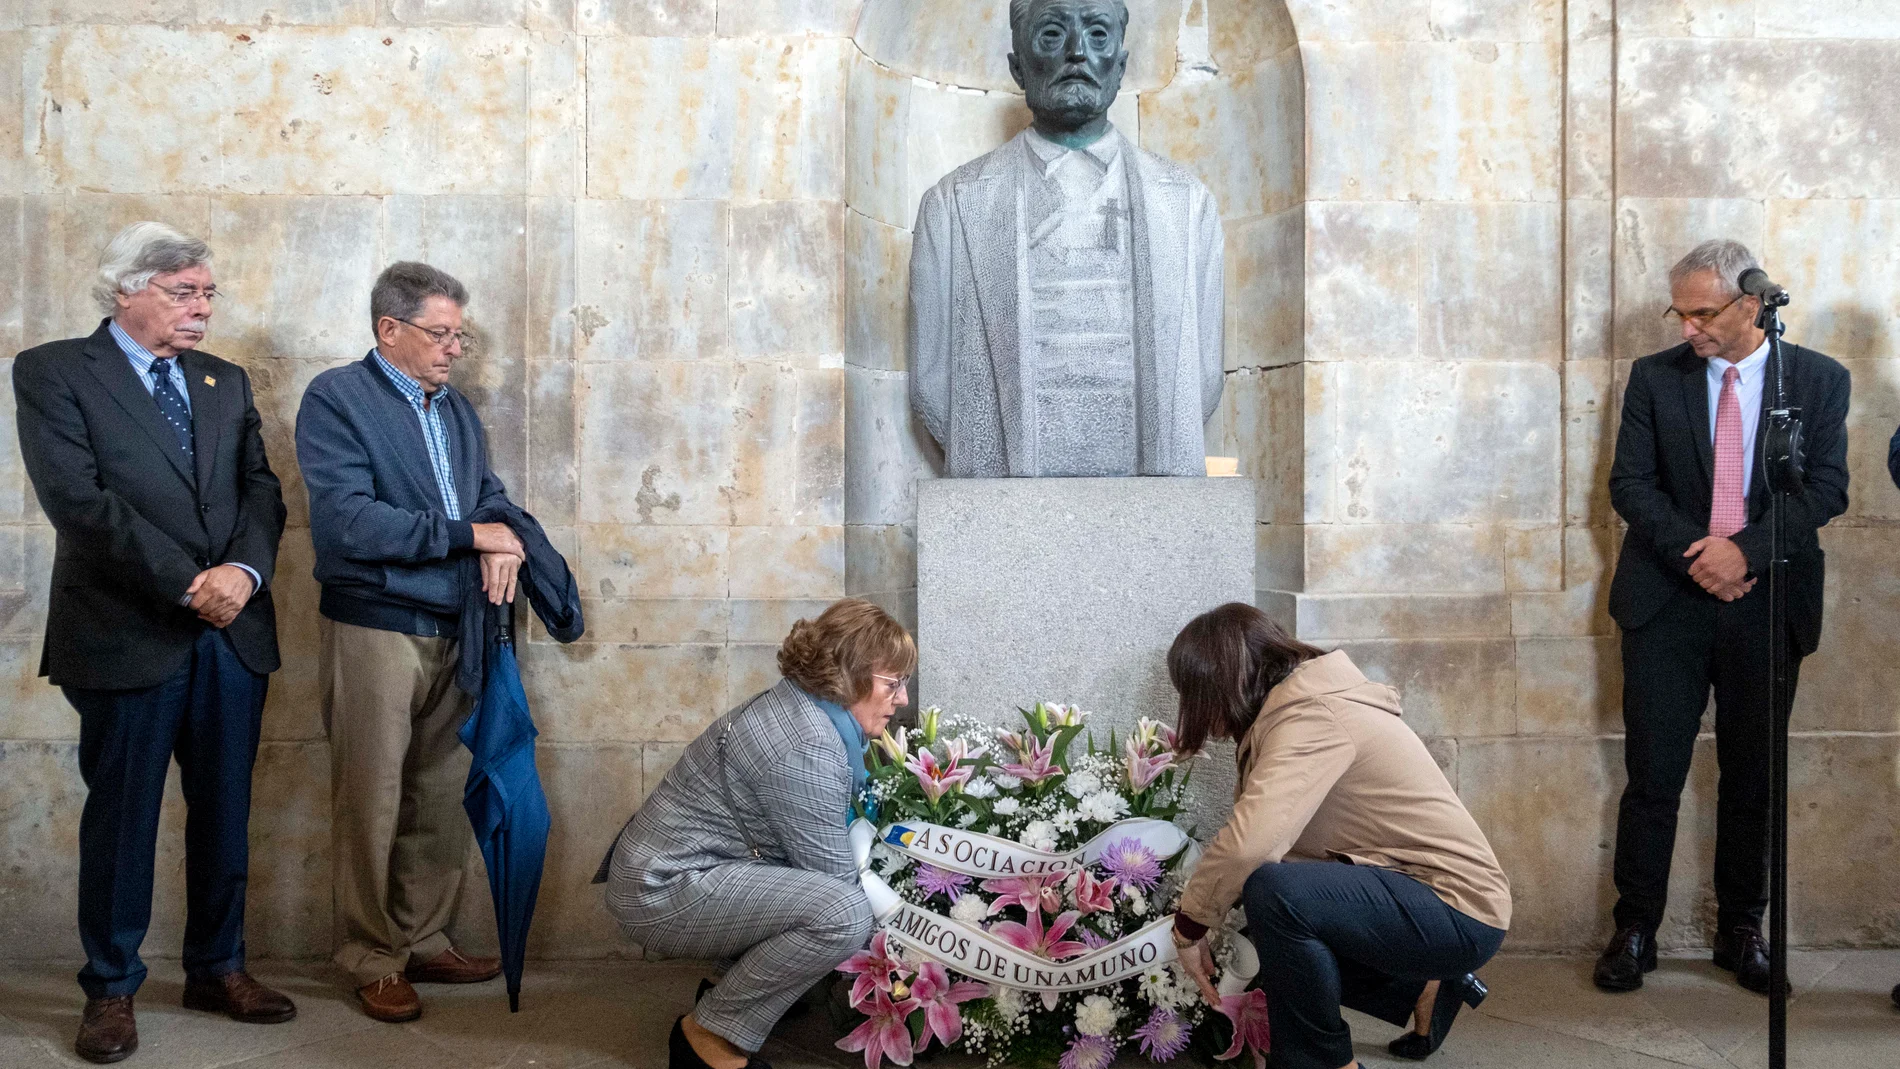 La Universidad de Salamanca celebra el "Día de Unamuno" mediante una ofrenda floral ante el busto de Victorio Macho en el Palacio de Anaya, que cuenta con la asistencia del rector, Ricardo Rivero, y del presidente de la Asociación Amigos de Unamuno, Francisco Blanco Prieto